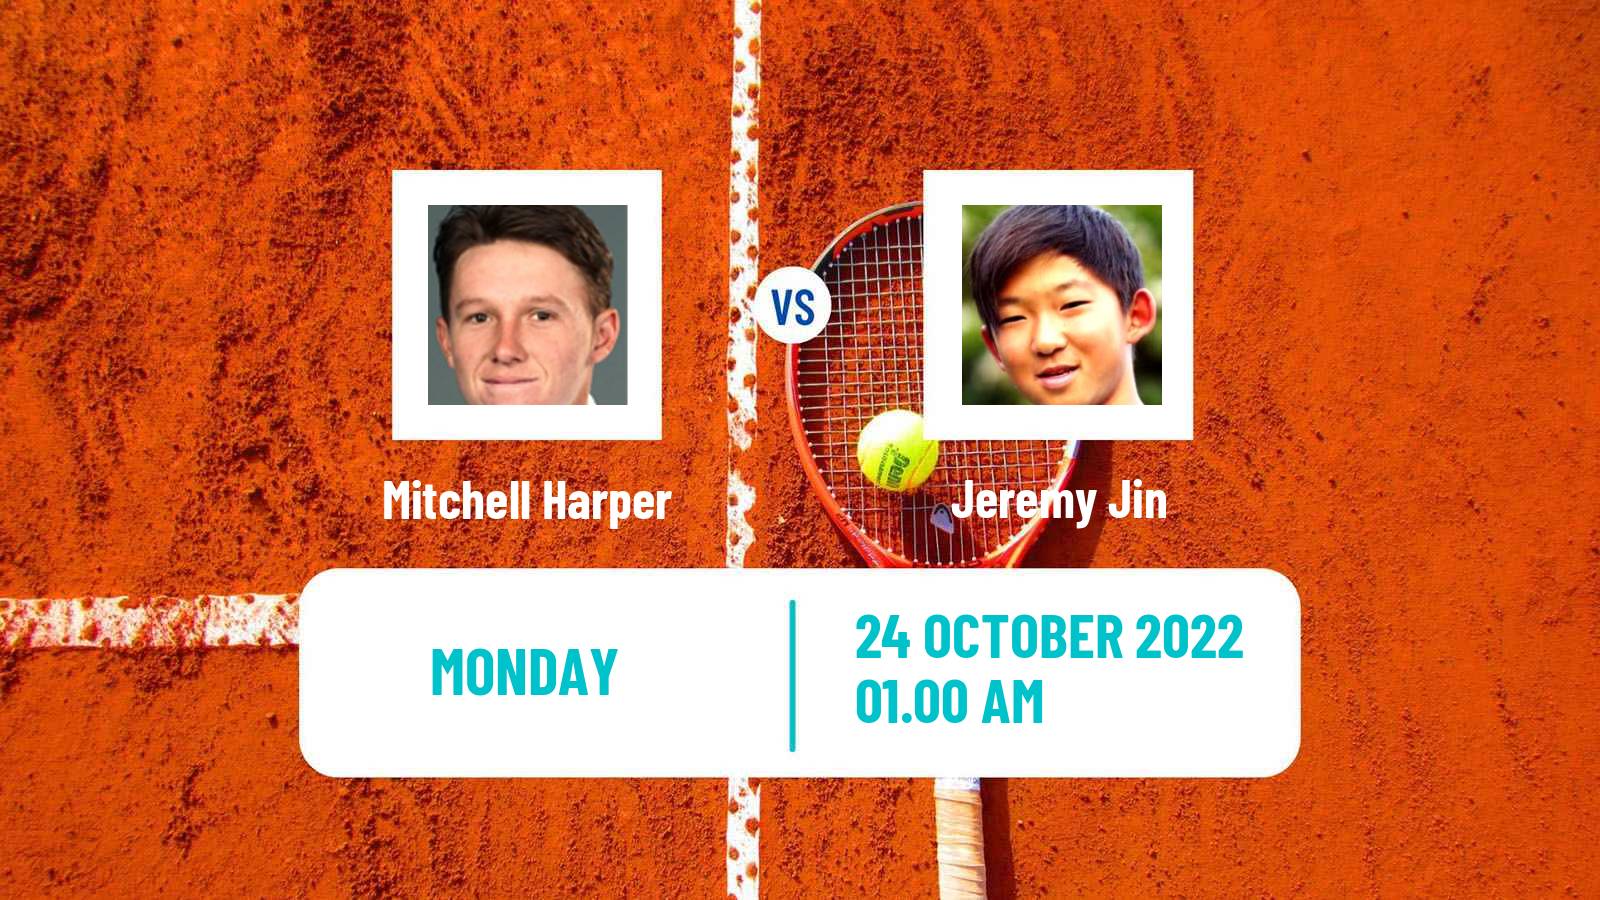 Tennis ATP Challenger Mitchell Harper - Jeremy Jin